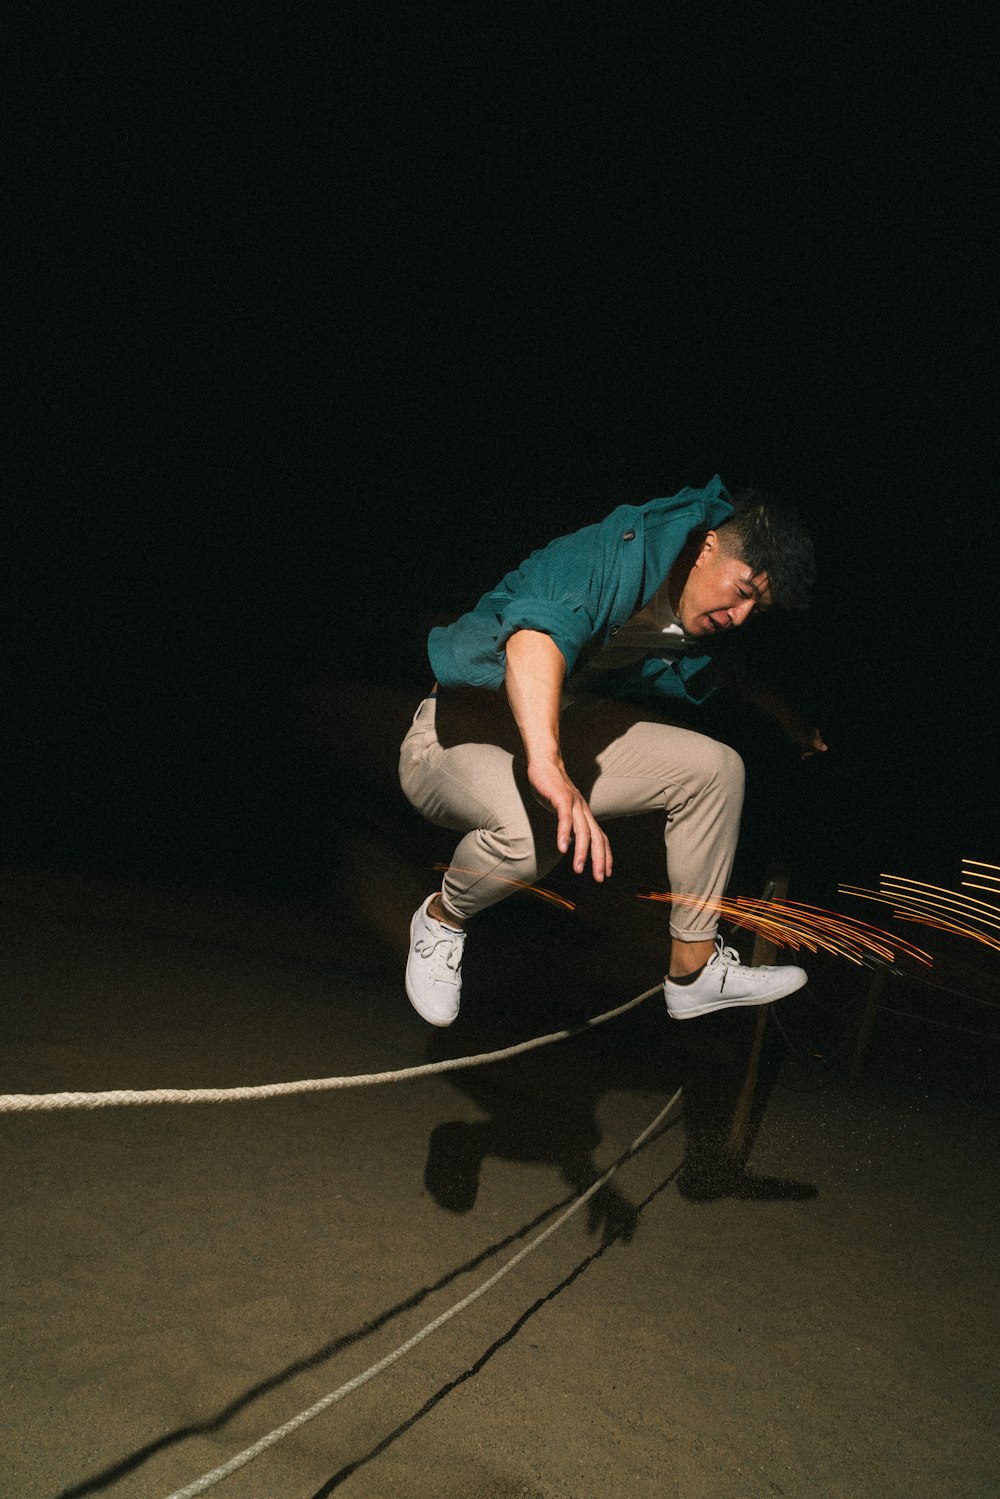 スケートボードの上でロープを飛び越える男